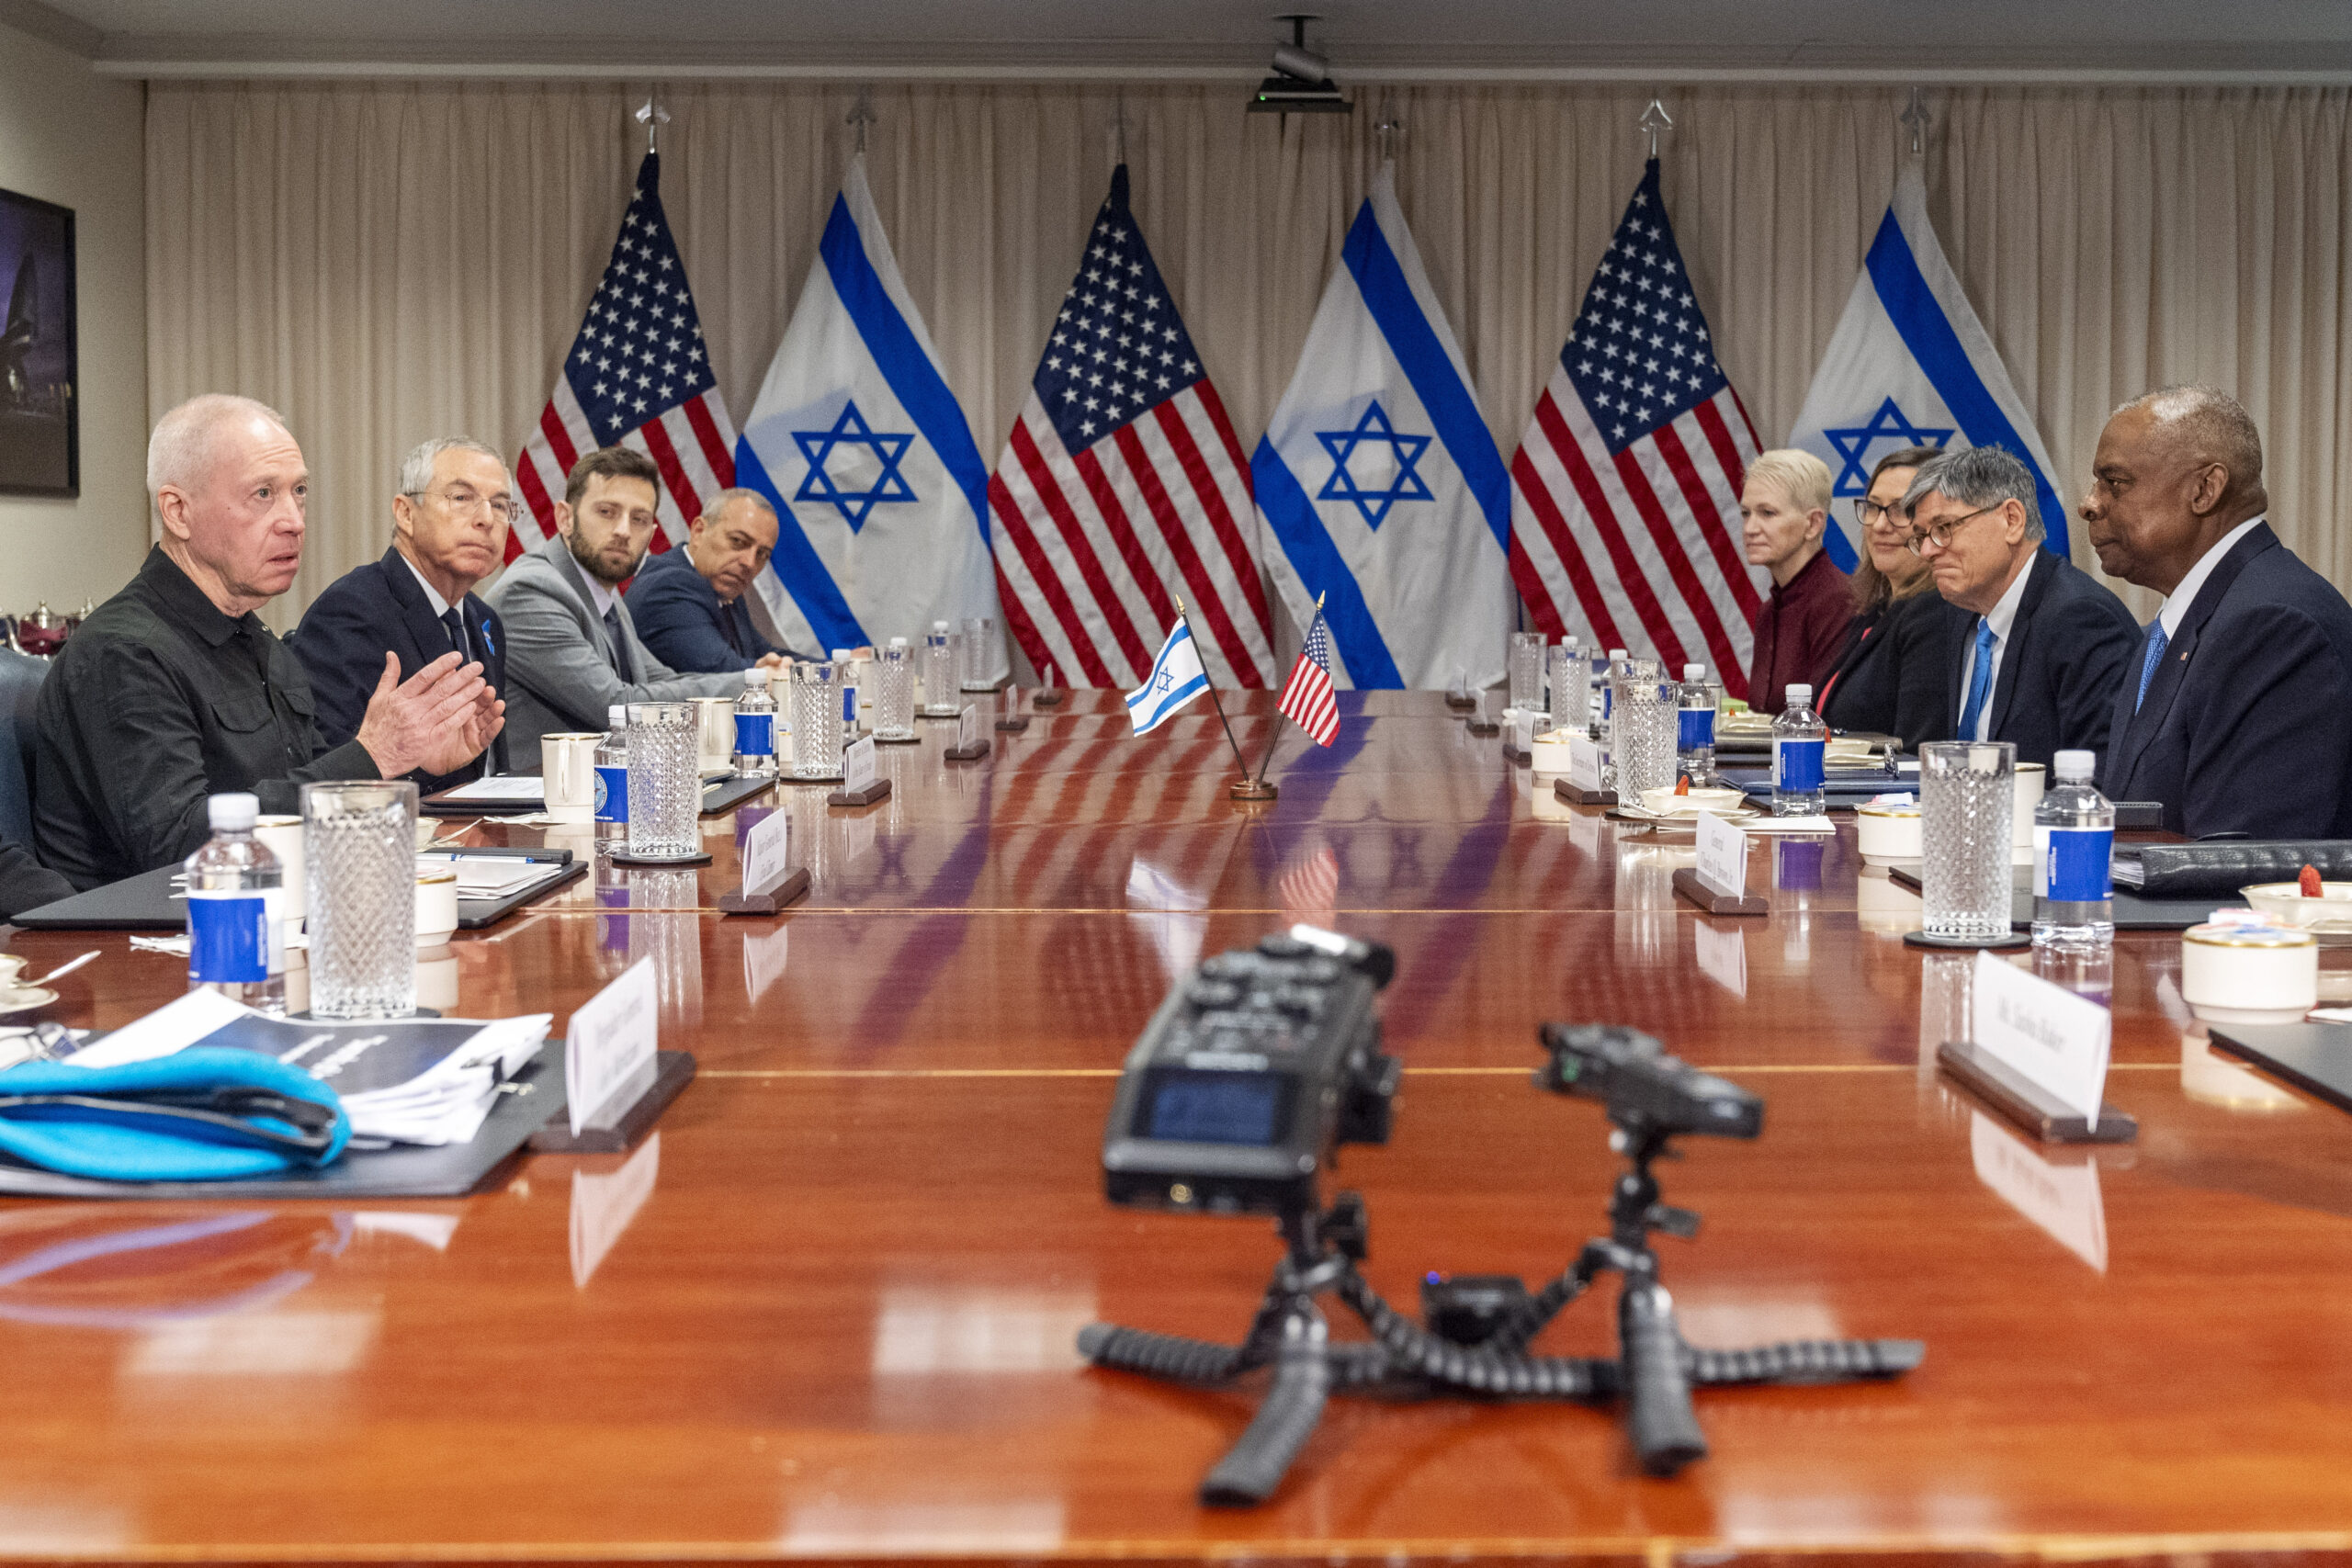 ΗΠΑ: Ο Λόιντ Όστιν καλωσόρισε τον Υπουργό Άμυνας του Ισραήλ – Επιβεβαίωσαν τον κοινό στόχο ήττας της Χαμάς